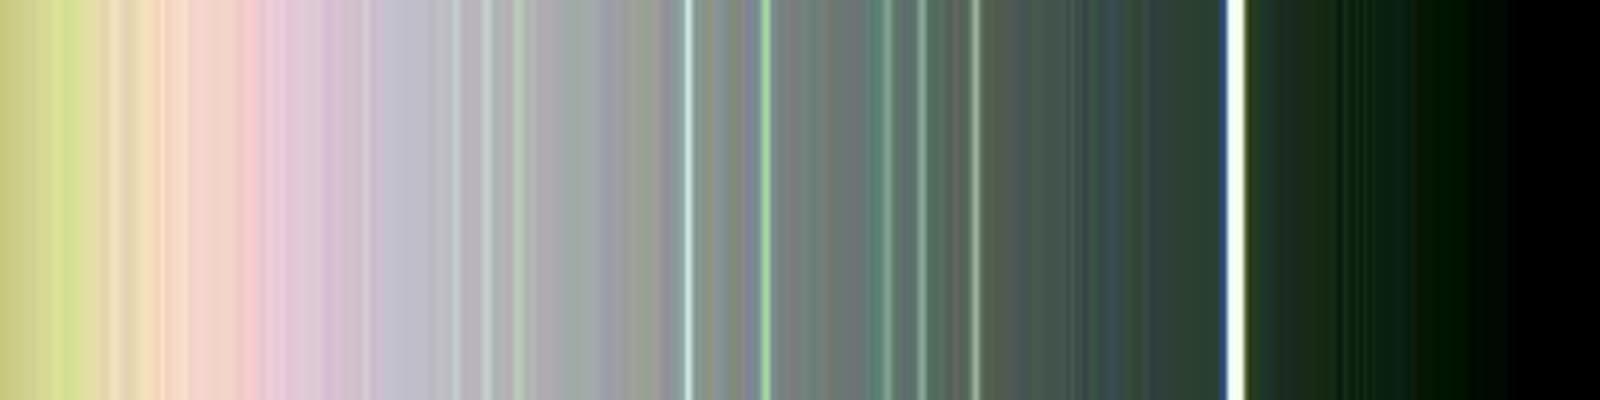 Les anneaux d'Uranus en fausses couleurs